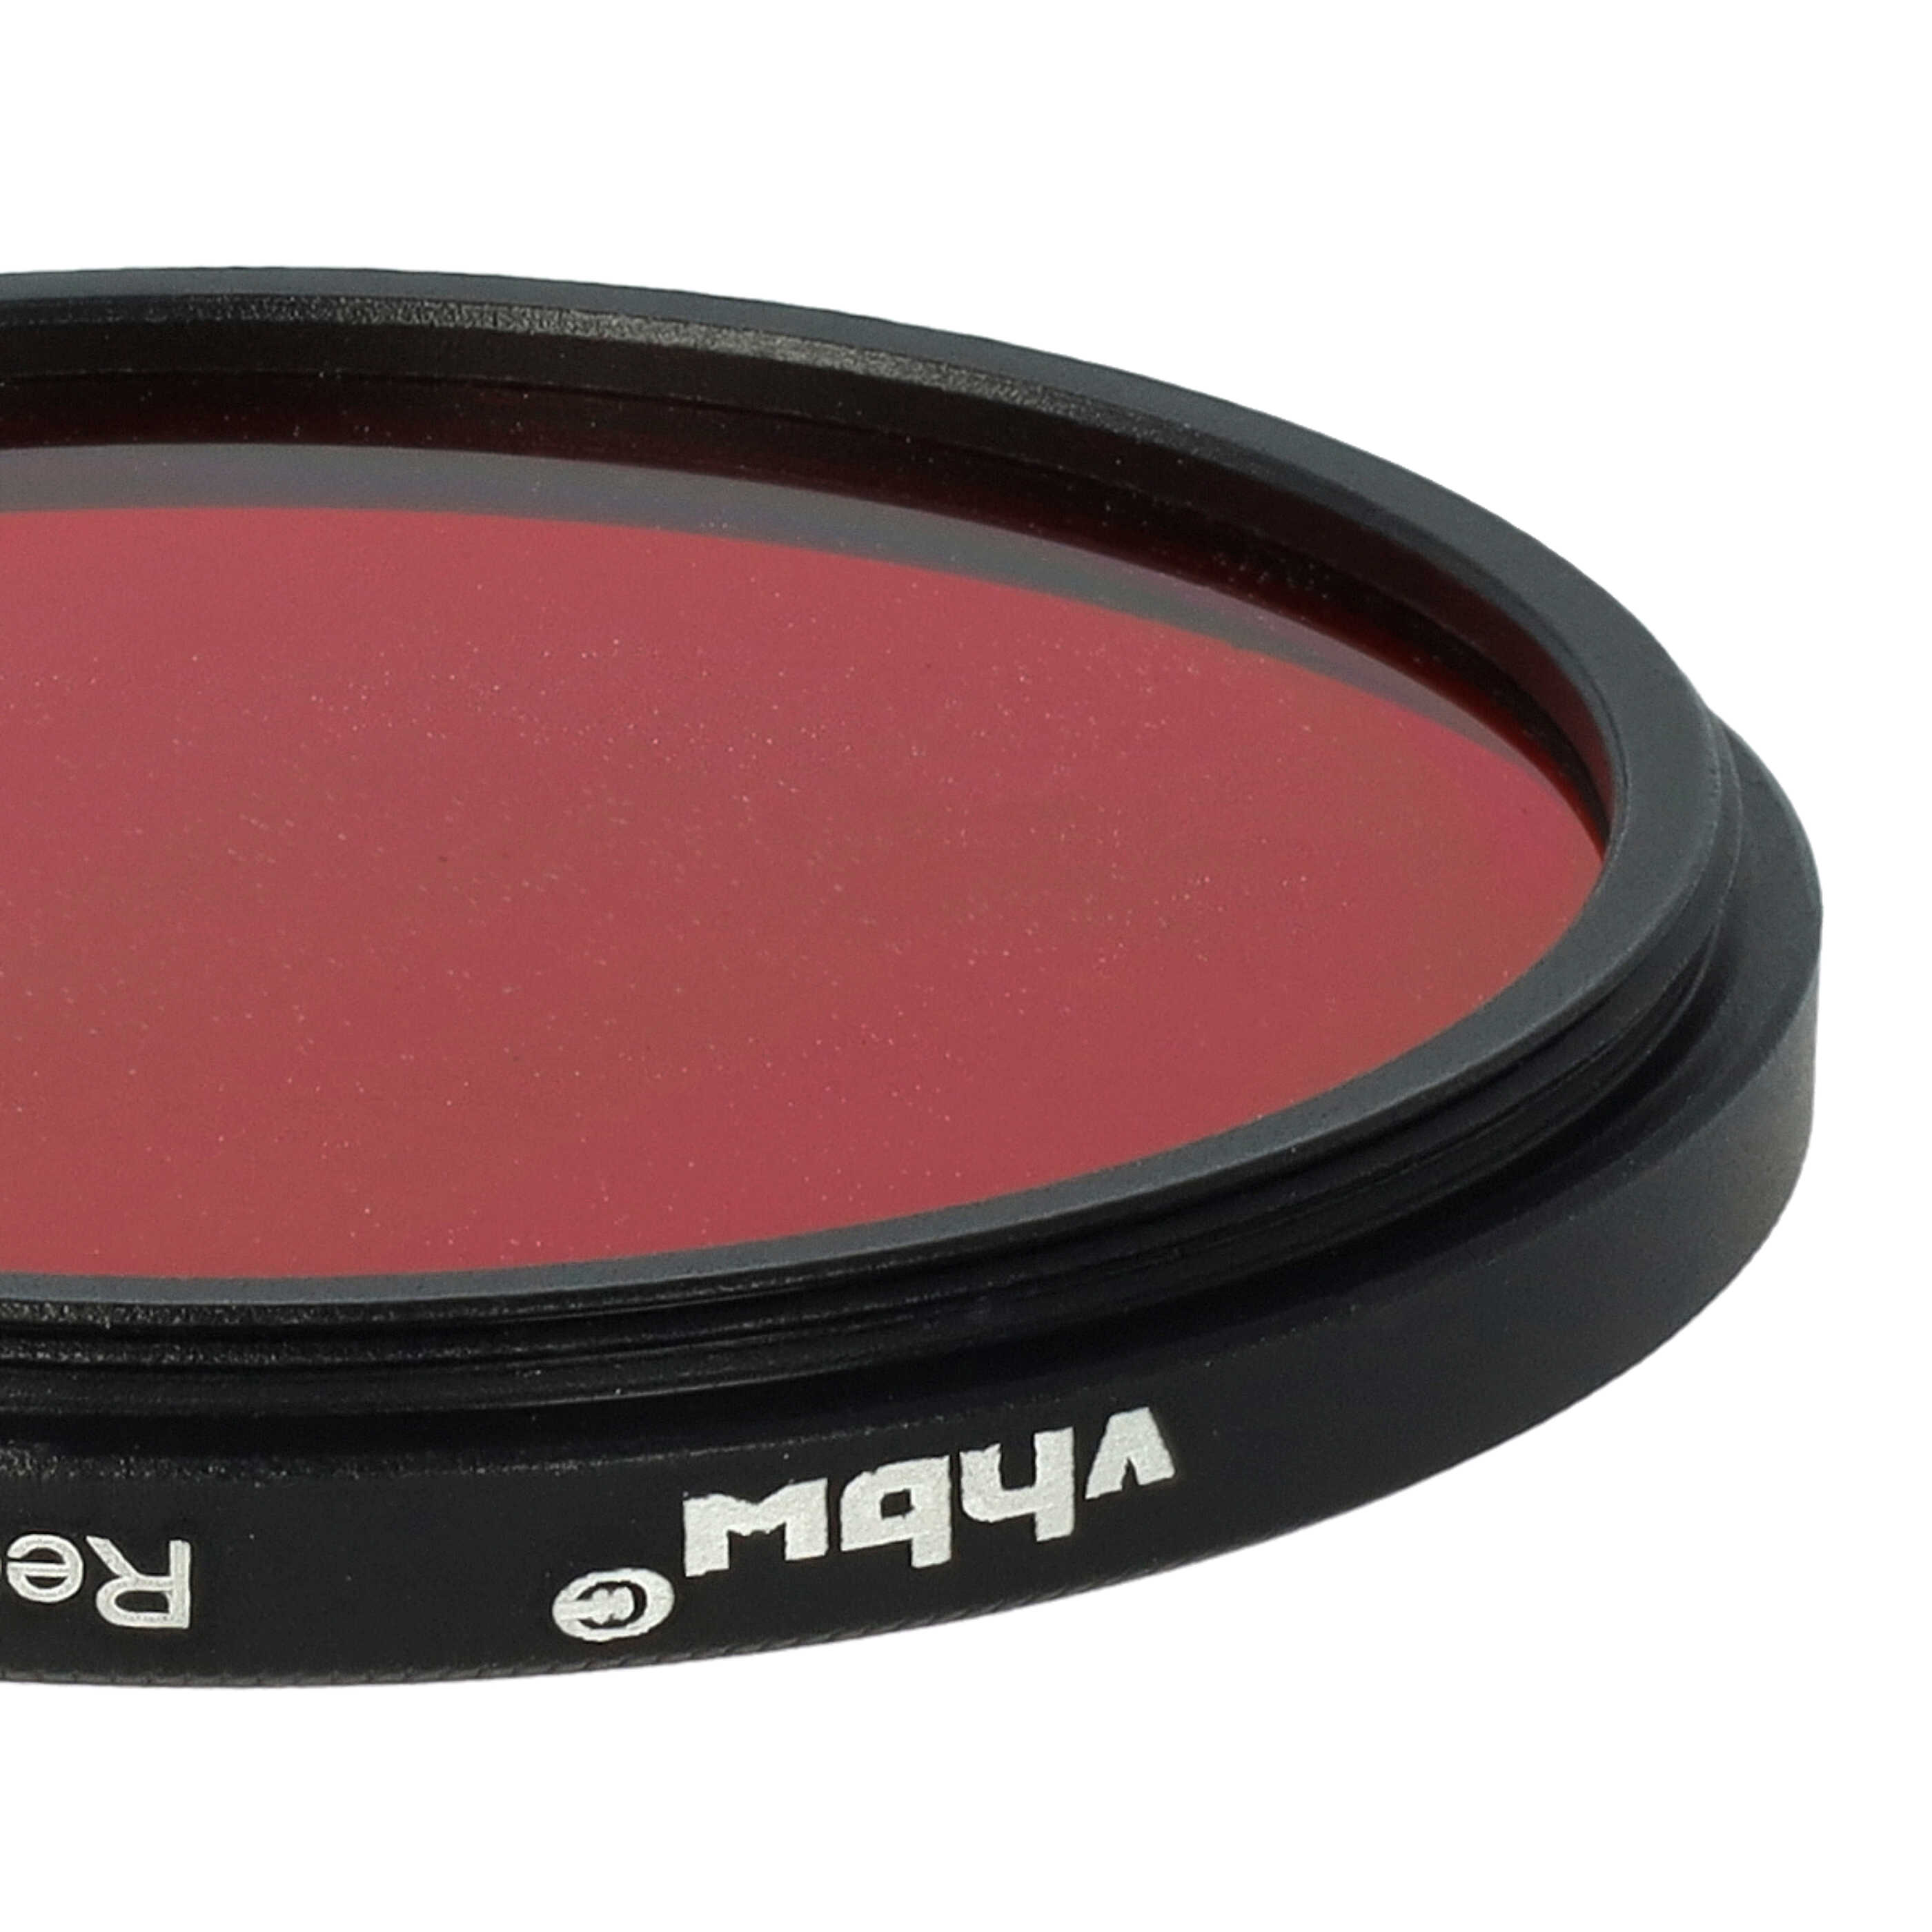 Filtro de color para objetivo de cámara con rosca de filtro de 52 mm - Filtro rojo